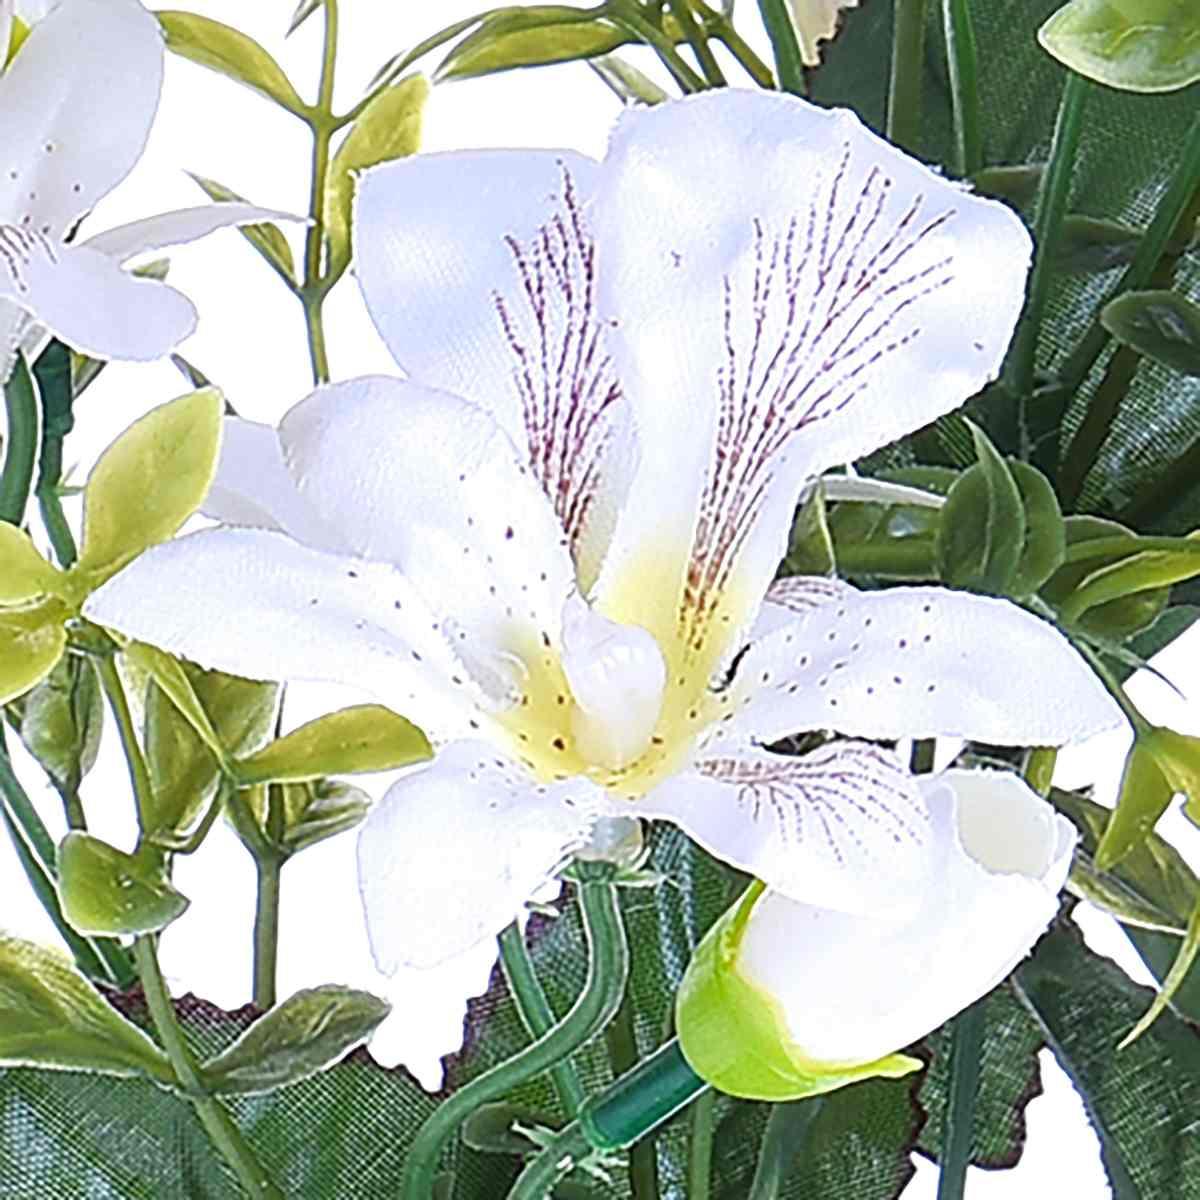 Fiore Bouquet Orchidee Mini Bianche cm.30